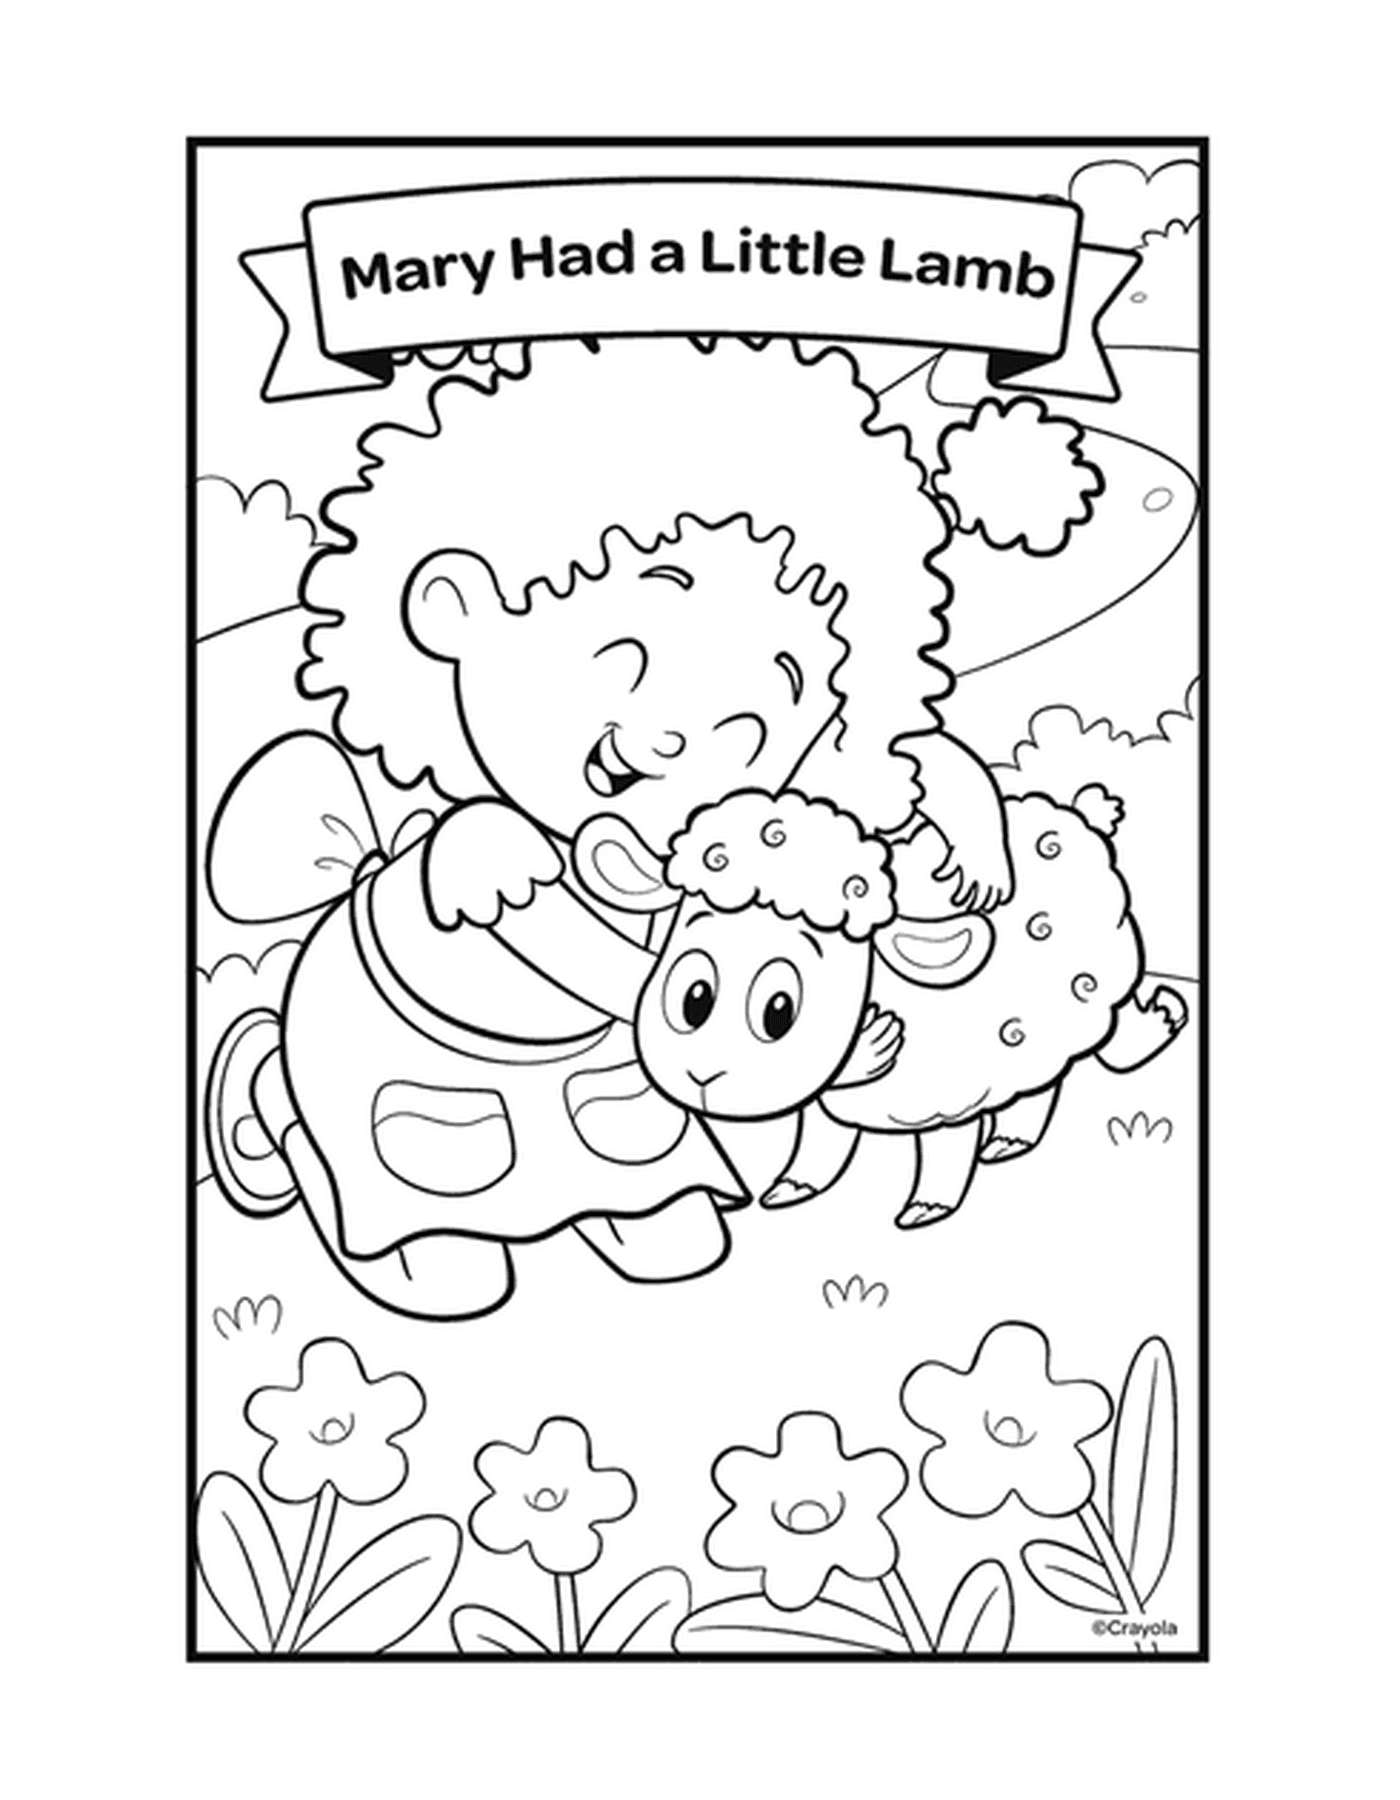  Maria tinha uma pequena rima de cordeiro com uma menina e uma ovelha 